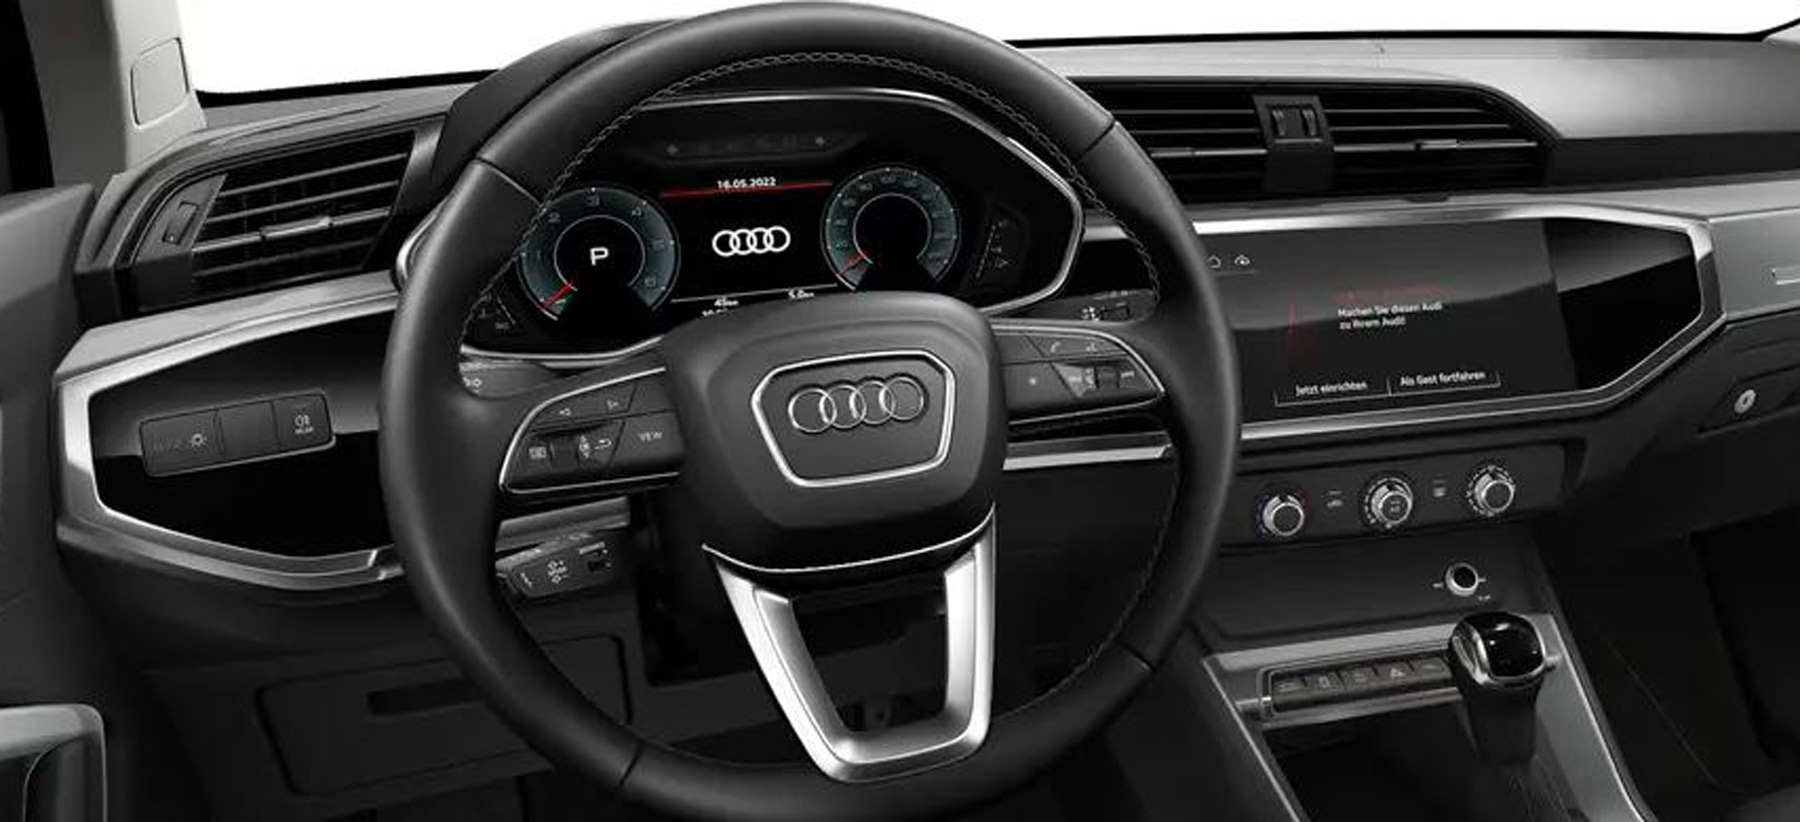 Unser Q3 Sportback von innen. Das 12,3 Zoll große Display des Vitrual Cockpit "plus" und das 10,1-Zoll-Farbdisplay des Navigationssystems beherrschen das Bild und zeugen von den vielen Funktionsextras des SUV. - Bild: Audi-Konfigurator